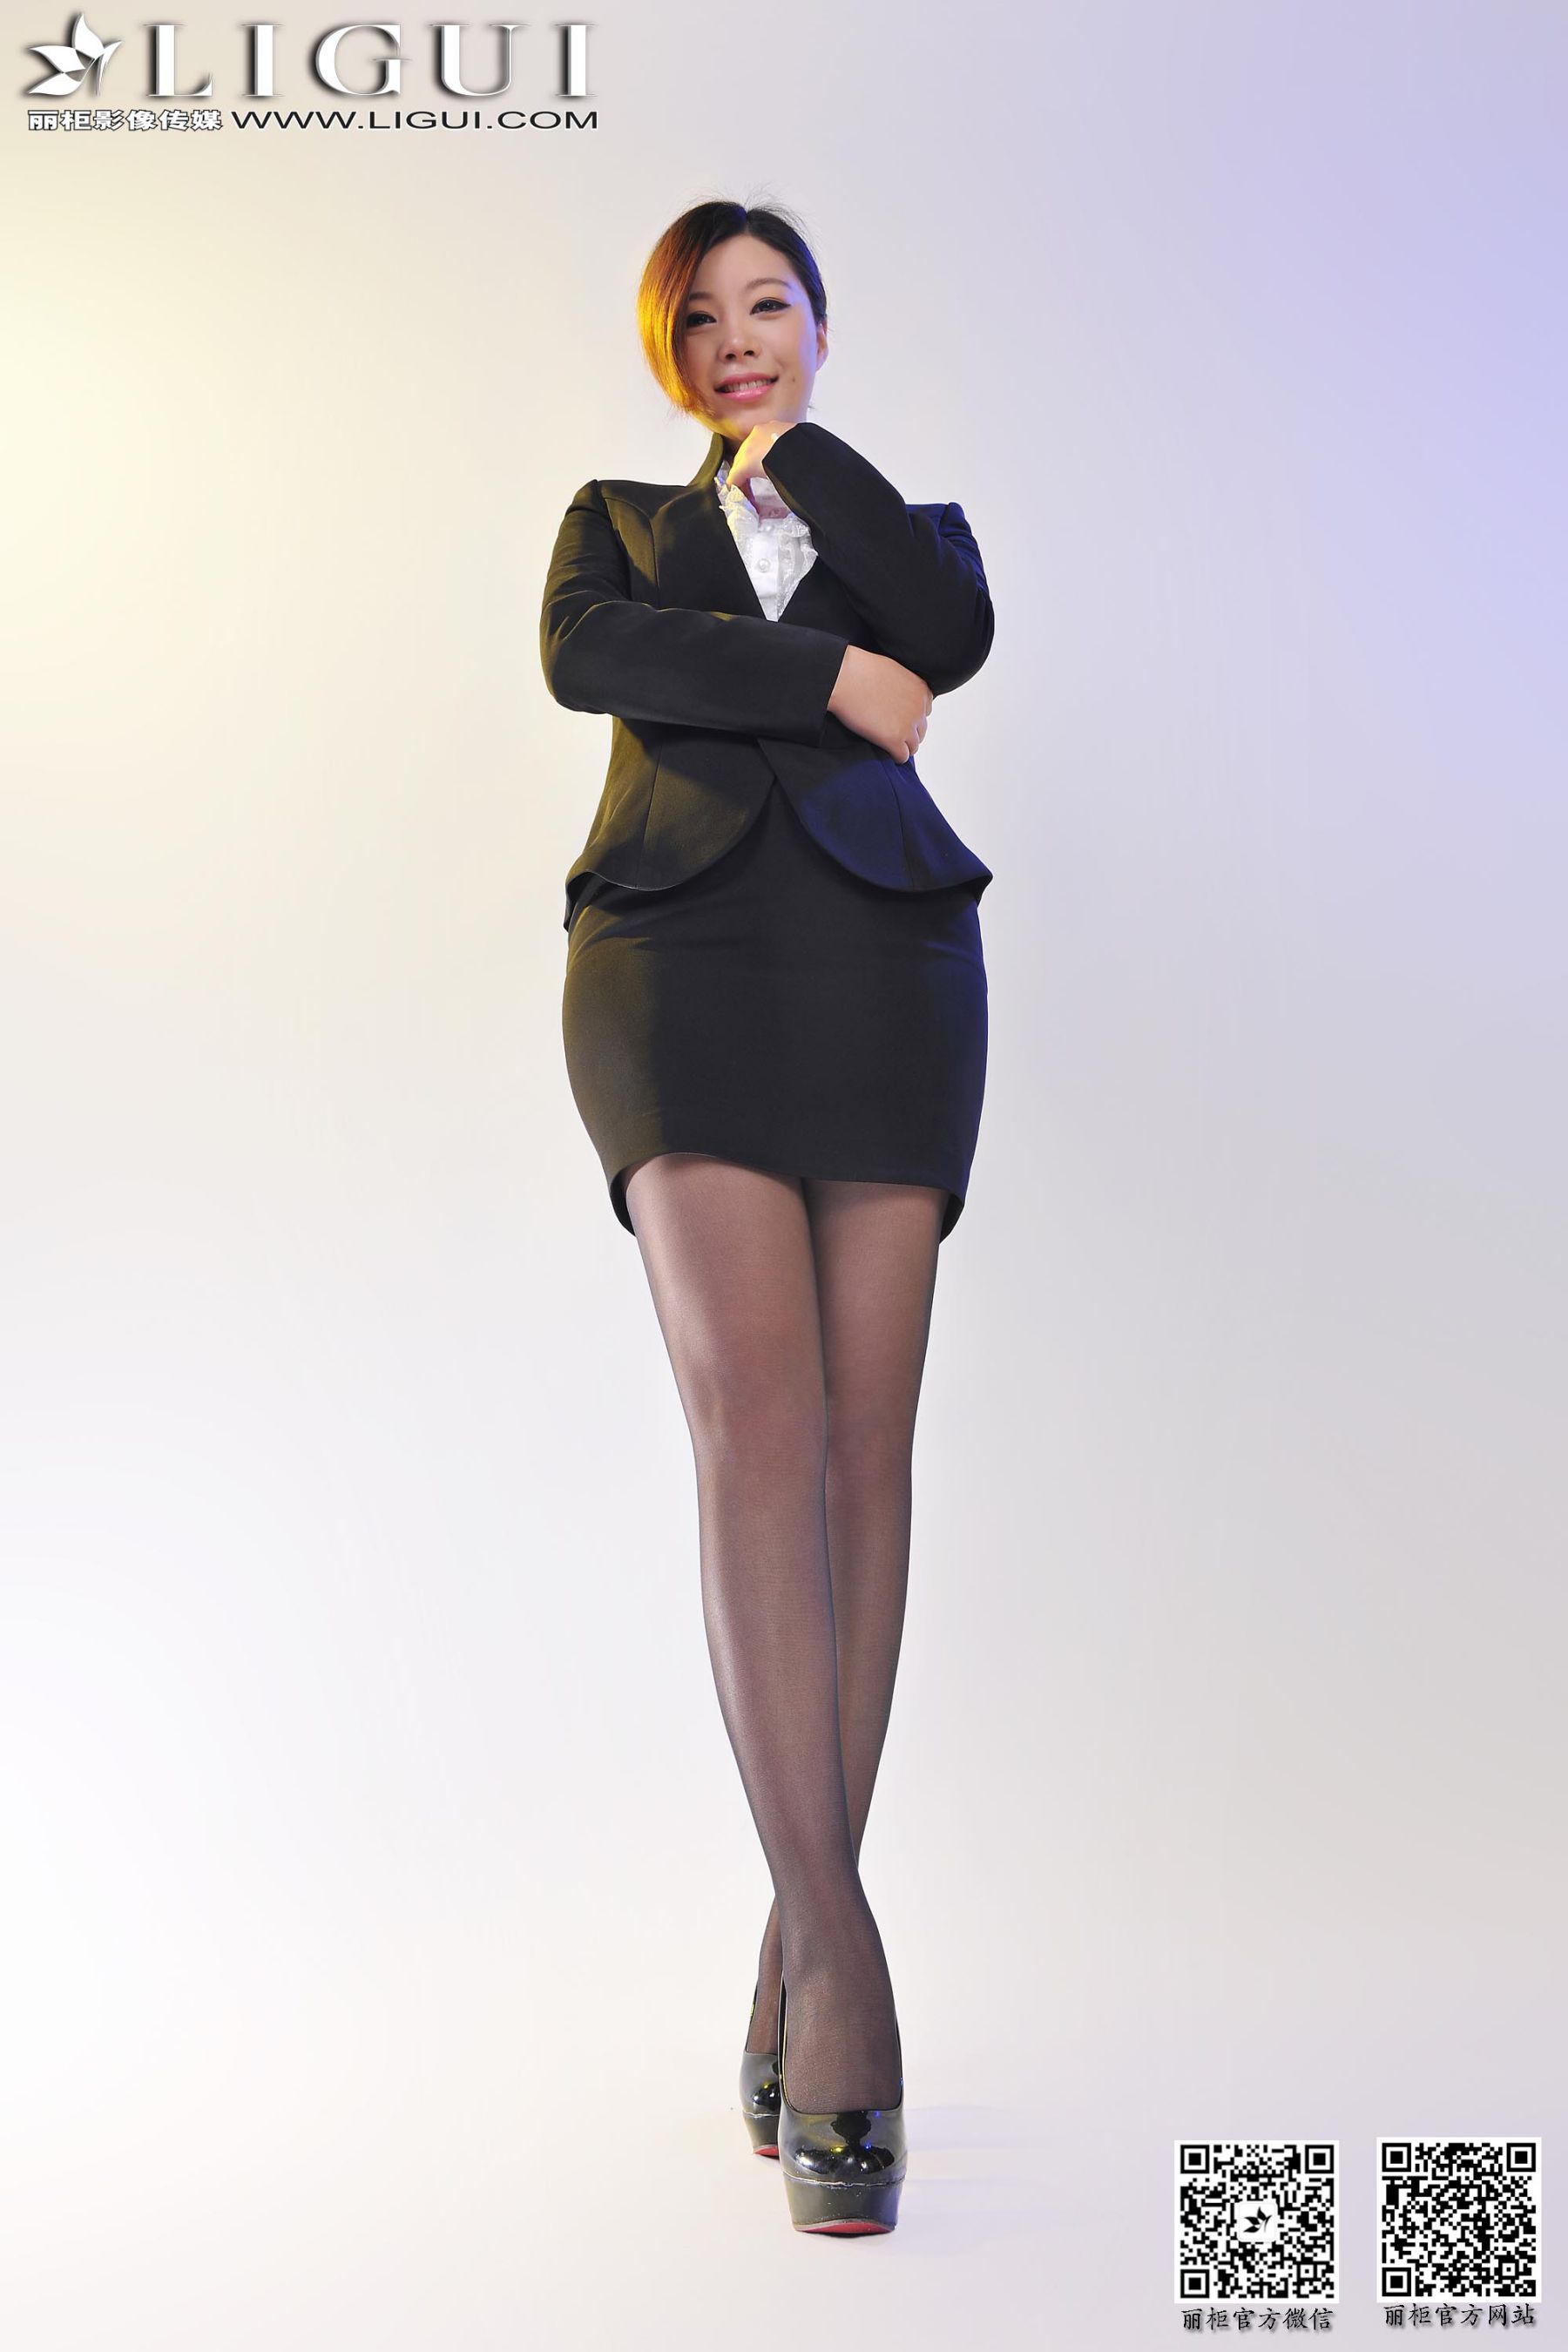 [柜 贵足] Model Heart “Workplace Black Sille OL” Beauty Leg Jade Photo Picture